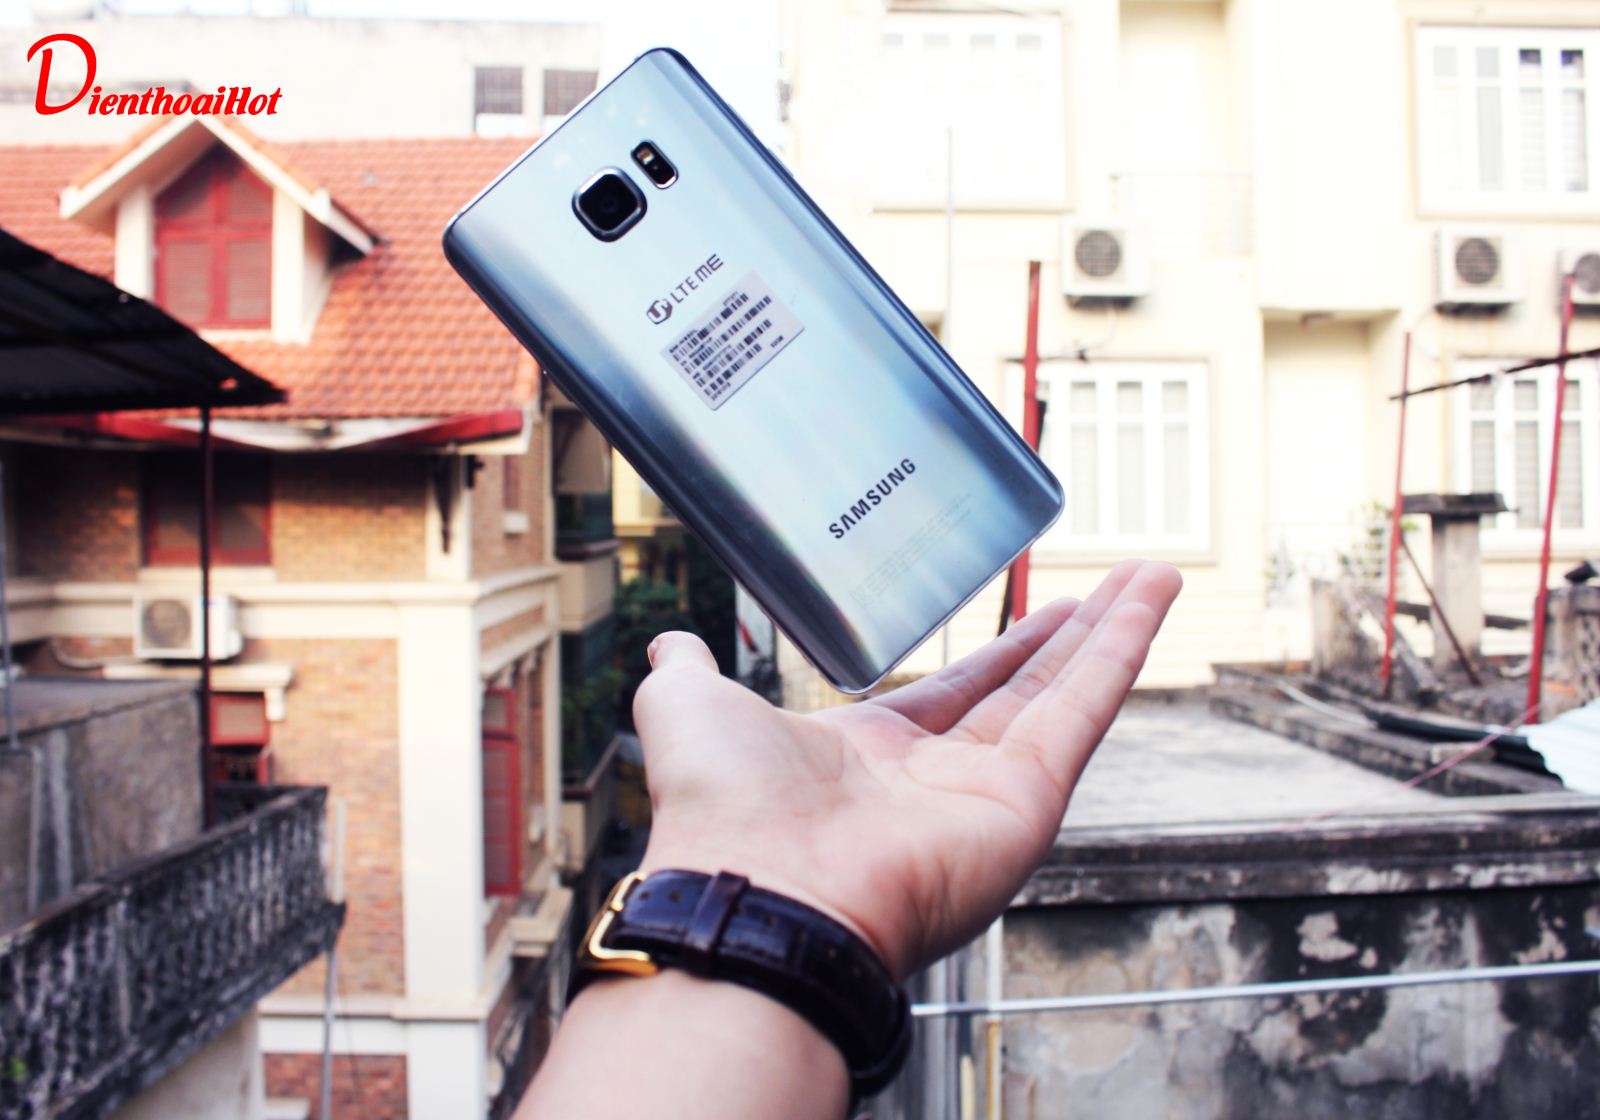 Samsung Galaxy Note 5 xách tay Hàn Quốc phiên bản luôn được ưa chuộng